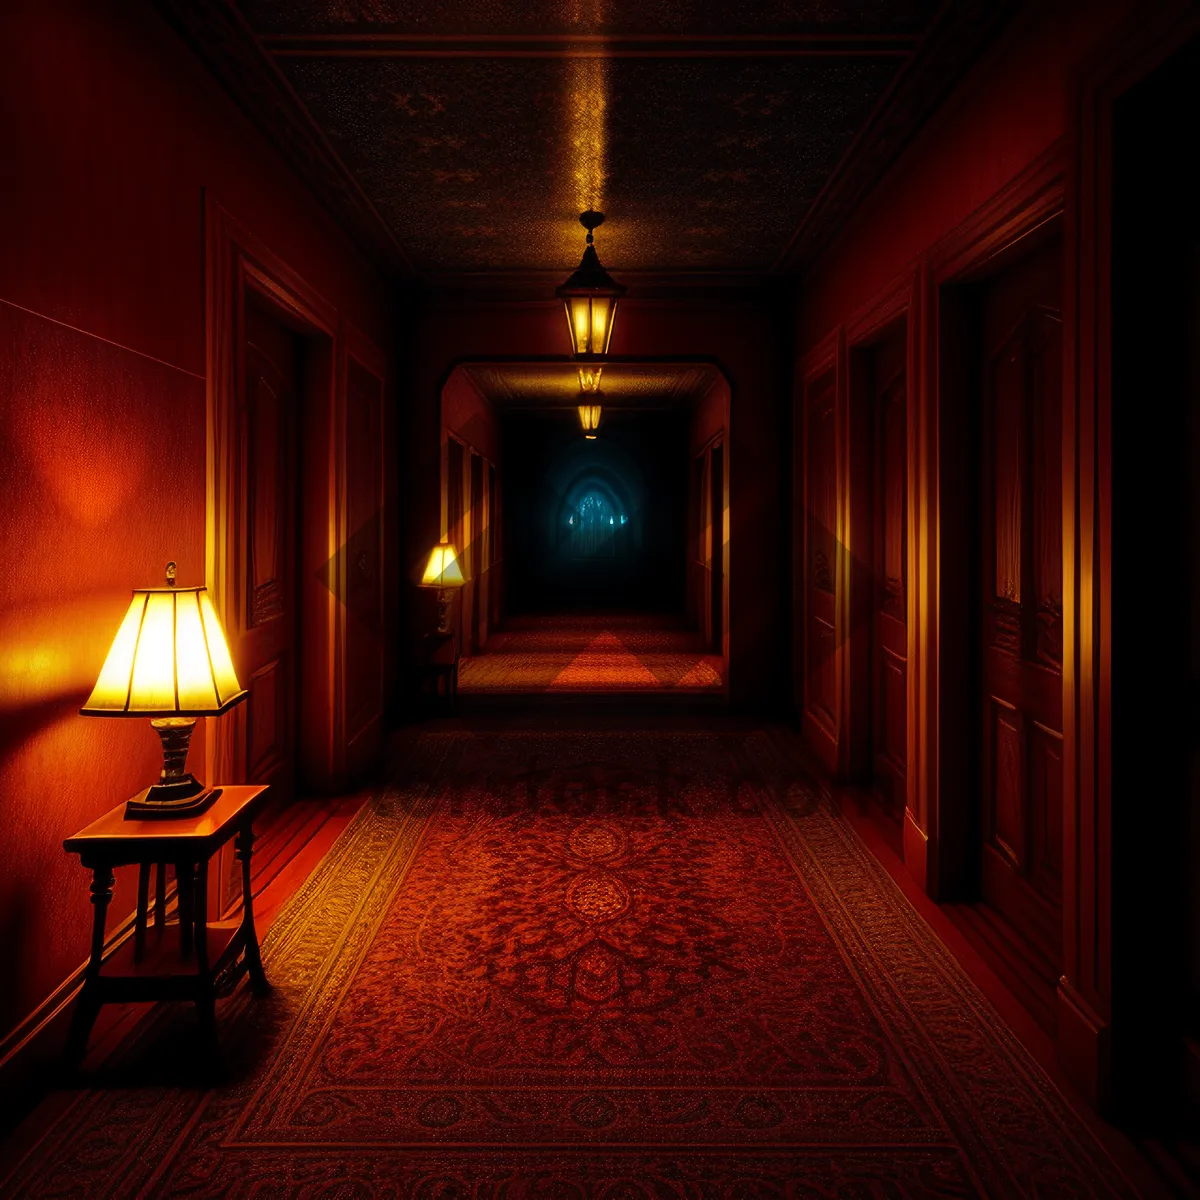 Picture of Grandeur in Old Mansion's Elegant Hallway